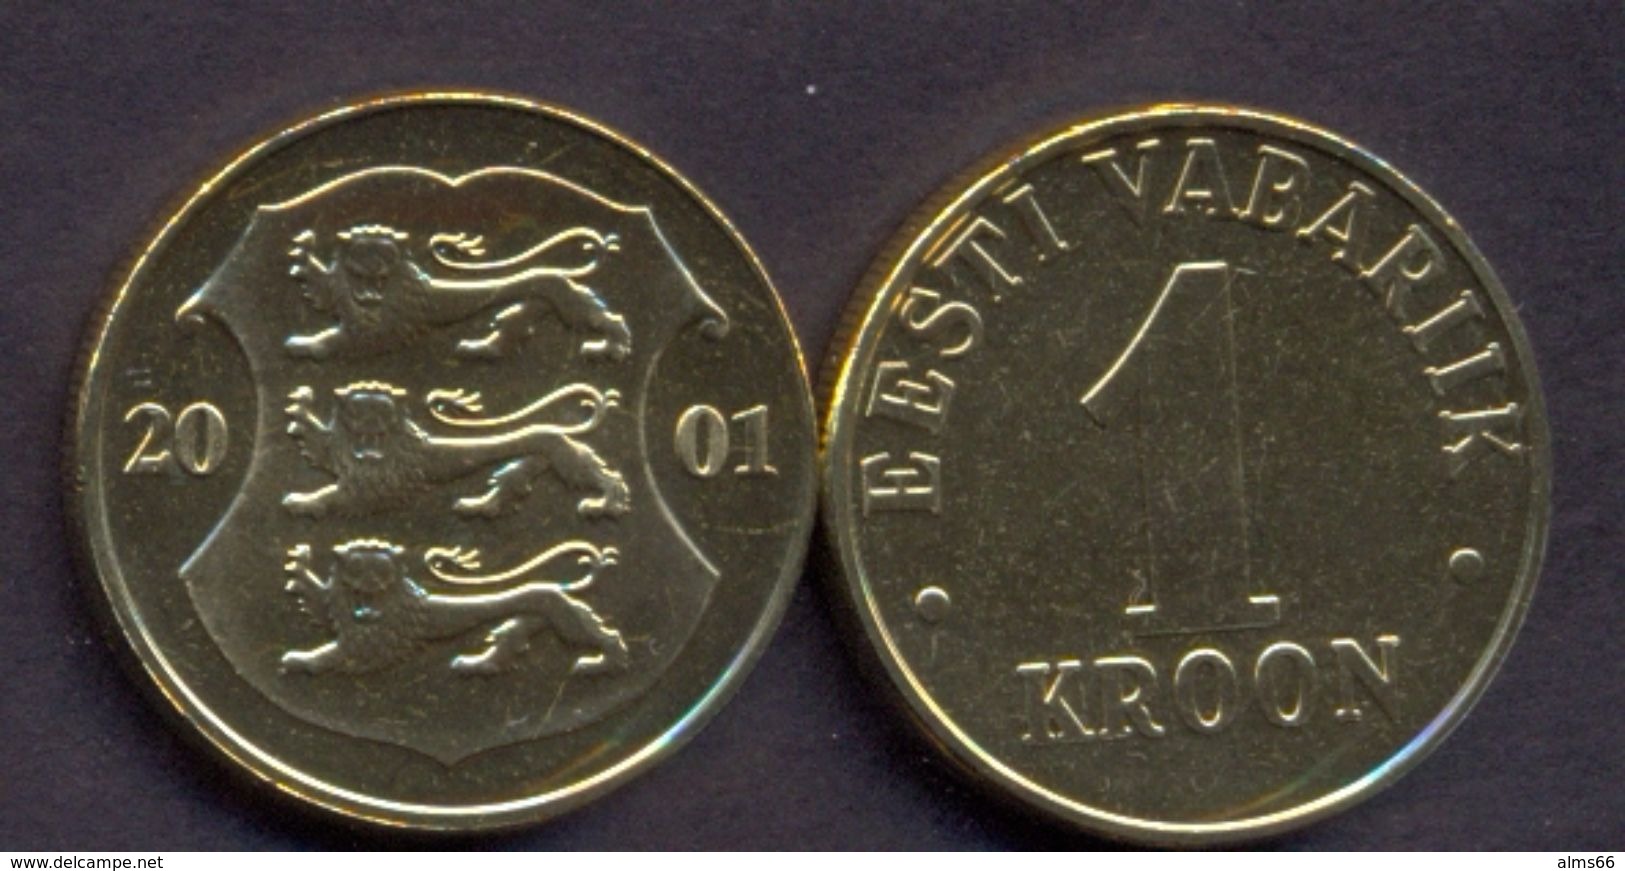 Estonia 1 Kroon 2001 UNC - Estland